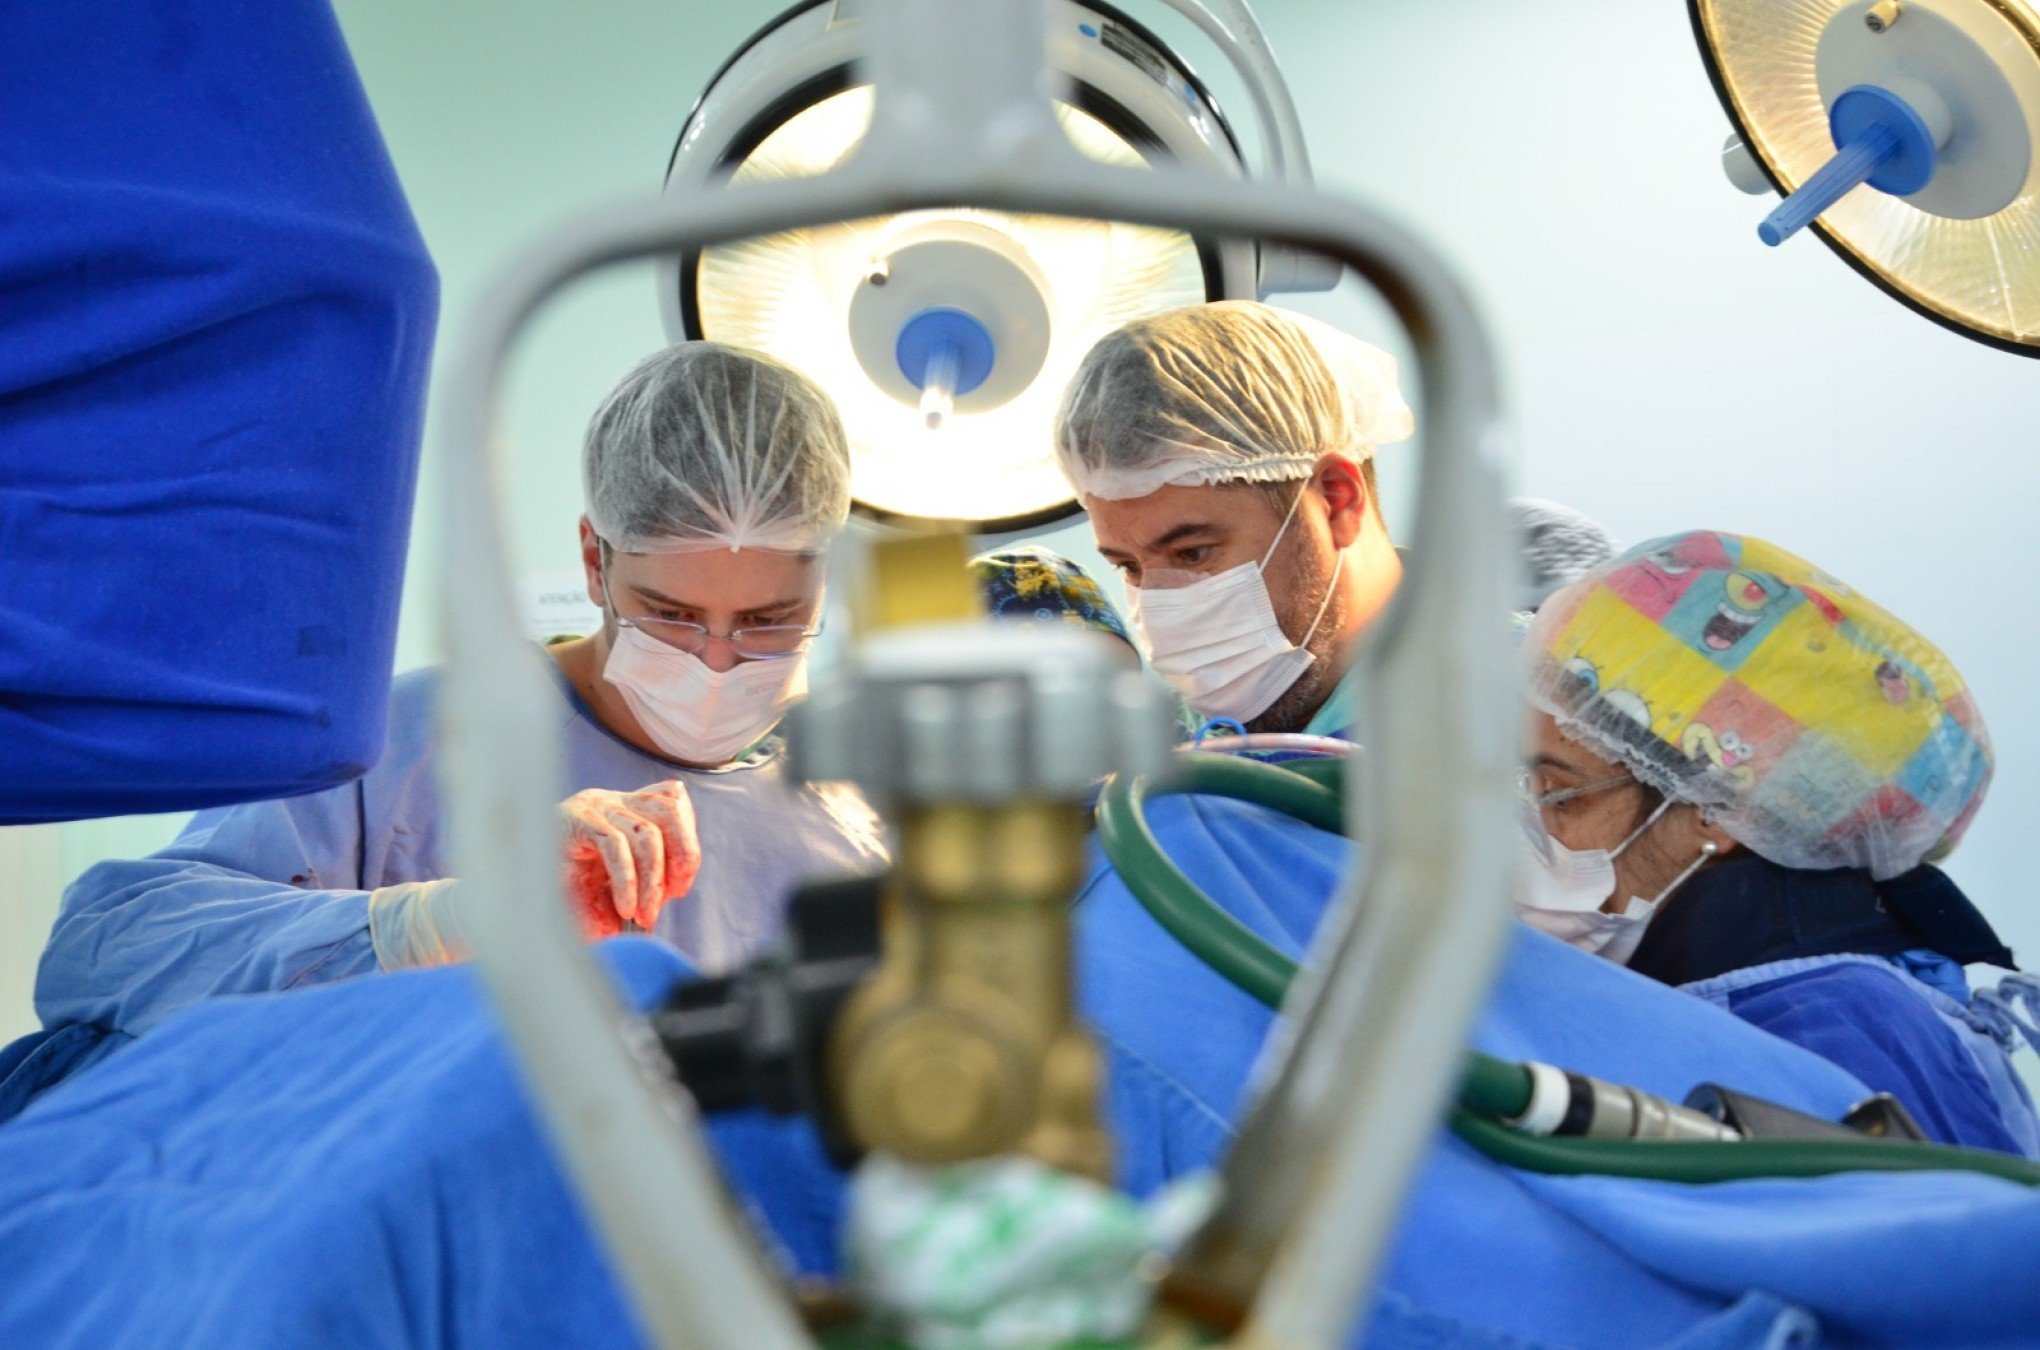 Mutirão de cirurgias começa com procedimentos de hérnia e vesícula no Hospital Universitário